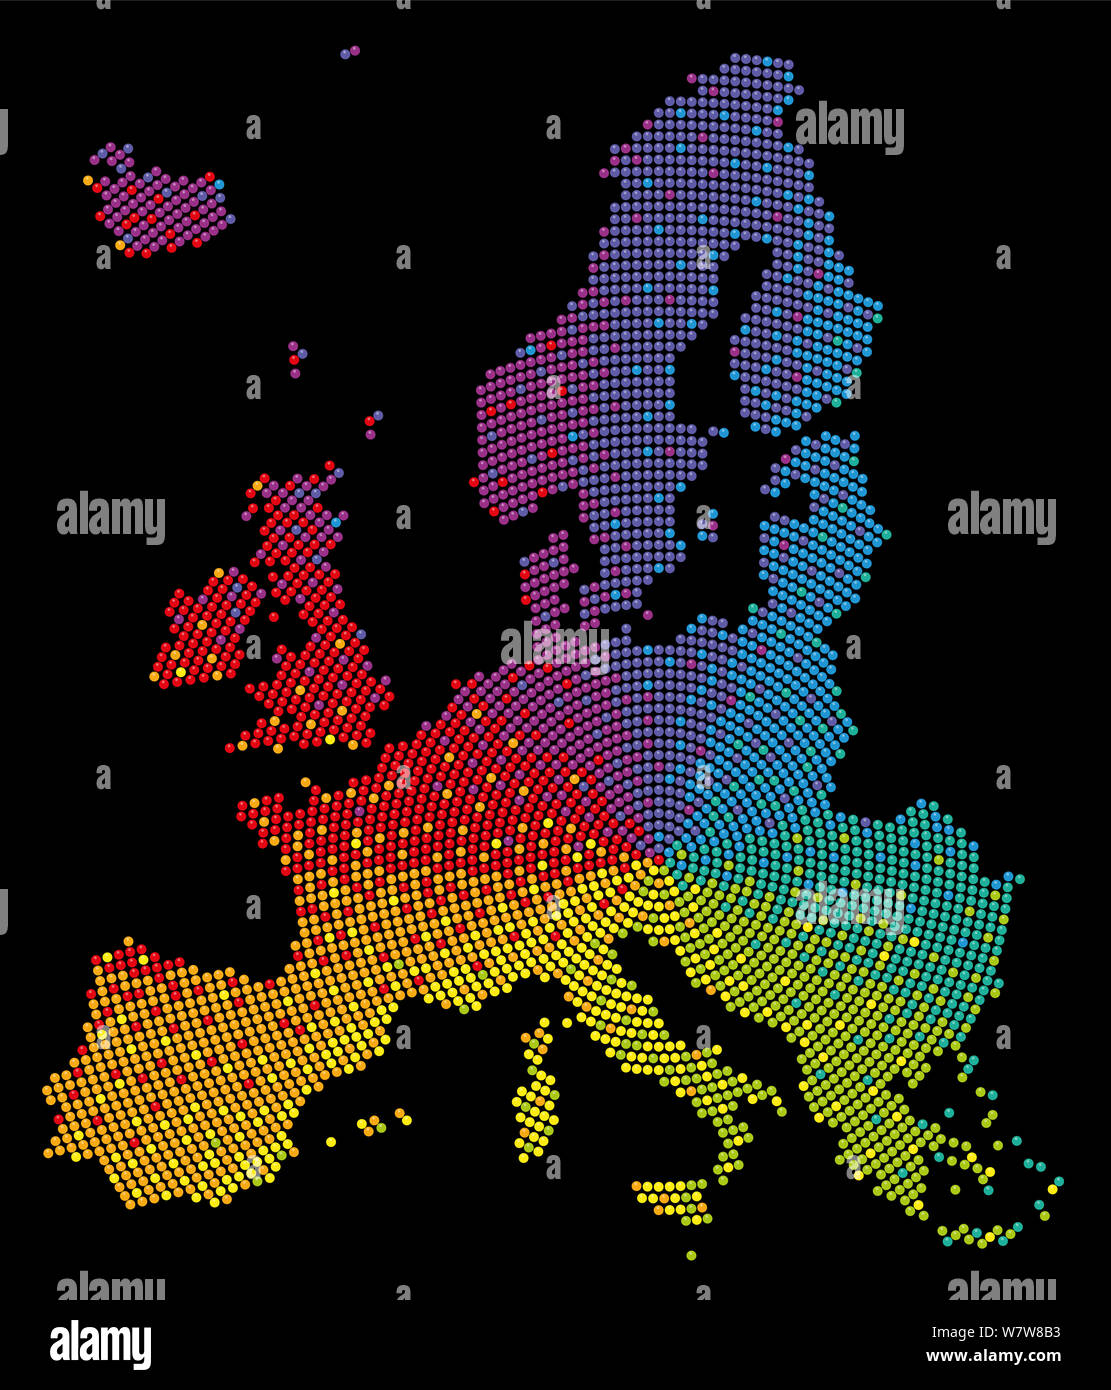 Europa Karte. Rainbow farbige Muster mit bunten Kugeln. Symbolisch für eine multikulturelle, tolerant, liberal und glücklich Organisation. Stockfoto